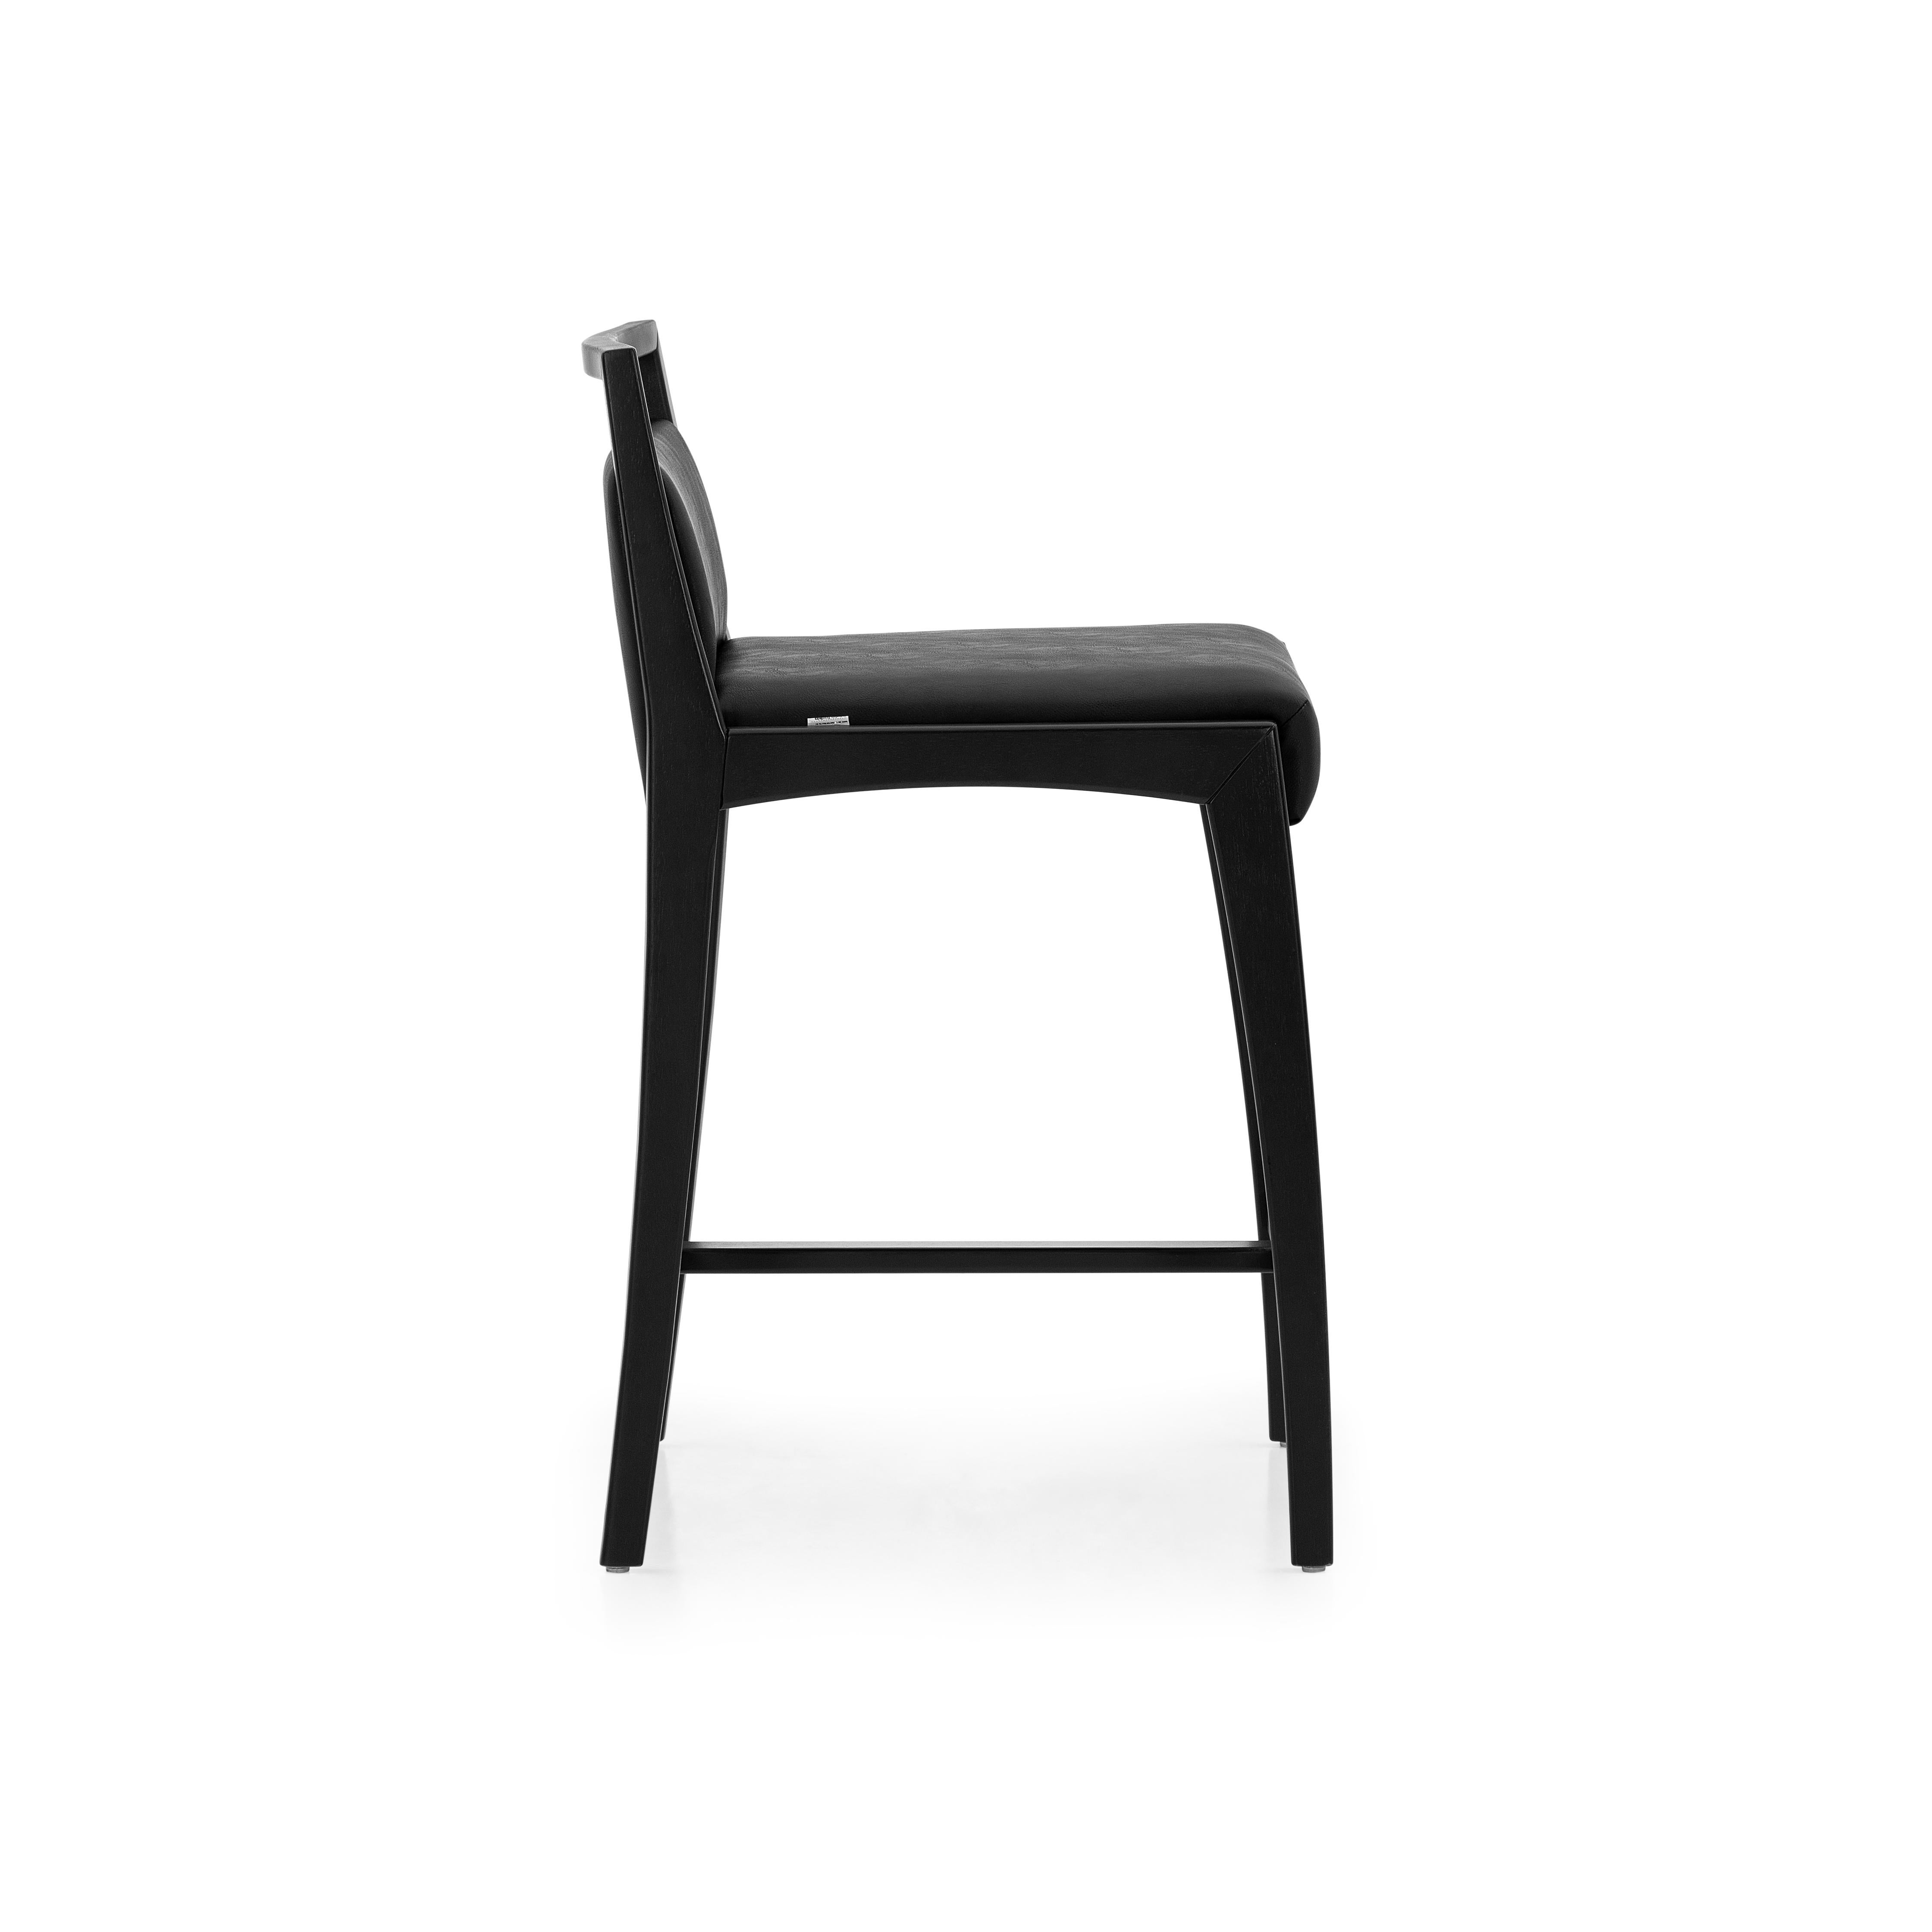 Le tabouret de comptoir Sotto est une pièce conçue avec une hauteur plus élevée pour être utilisée sur un comptoir ou une table haute. Cette chaise présente des caractéristiques frappantes, où la résistance et la délicatesse se rencontrent. Conçu